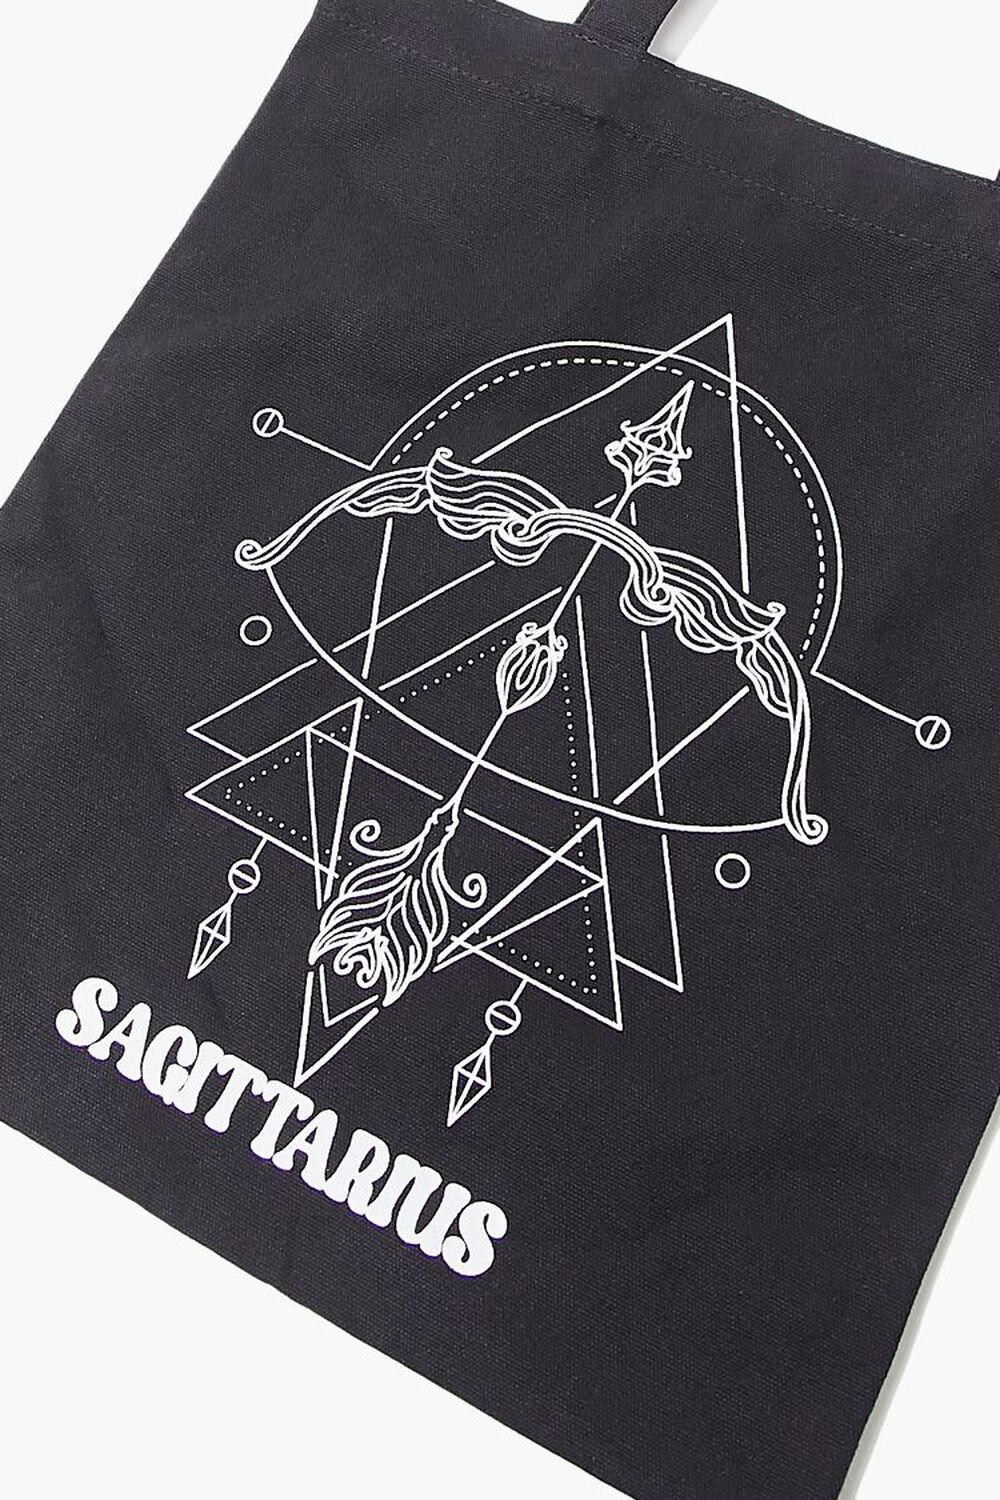 SAGITTARIUS/BLACK Zodiac Graphic Tote Bag, image 3